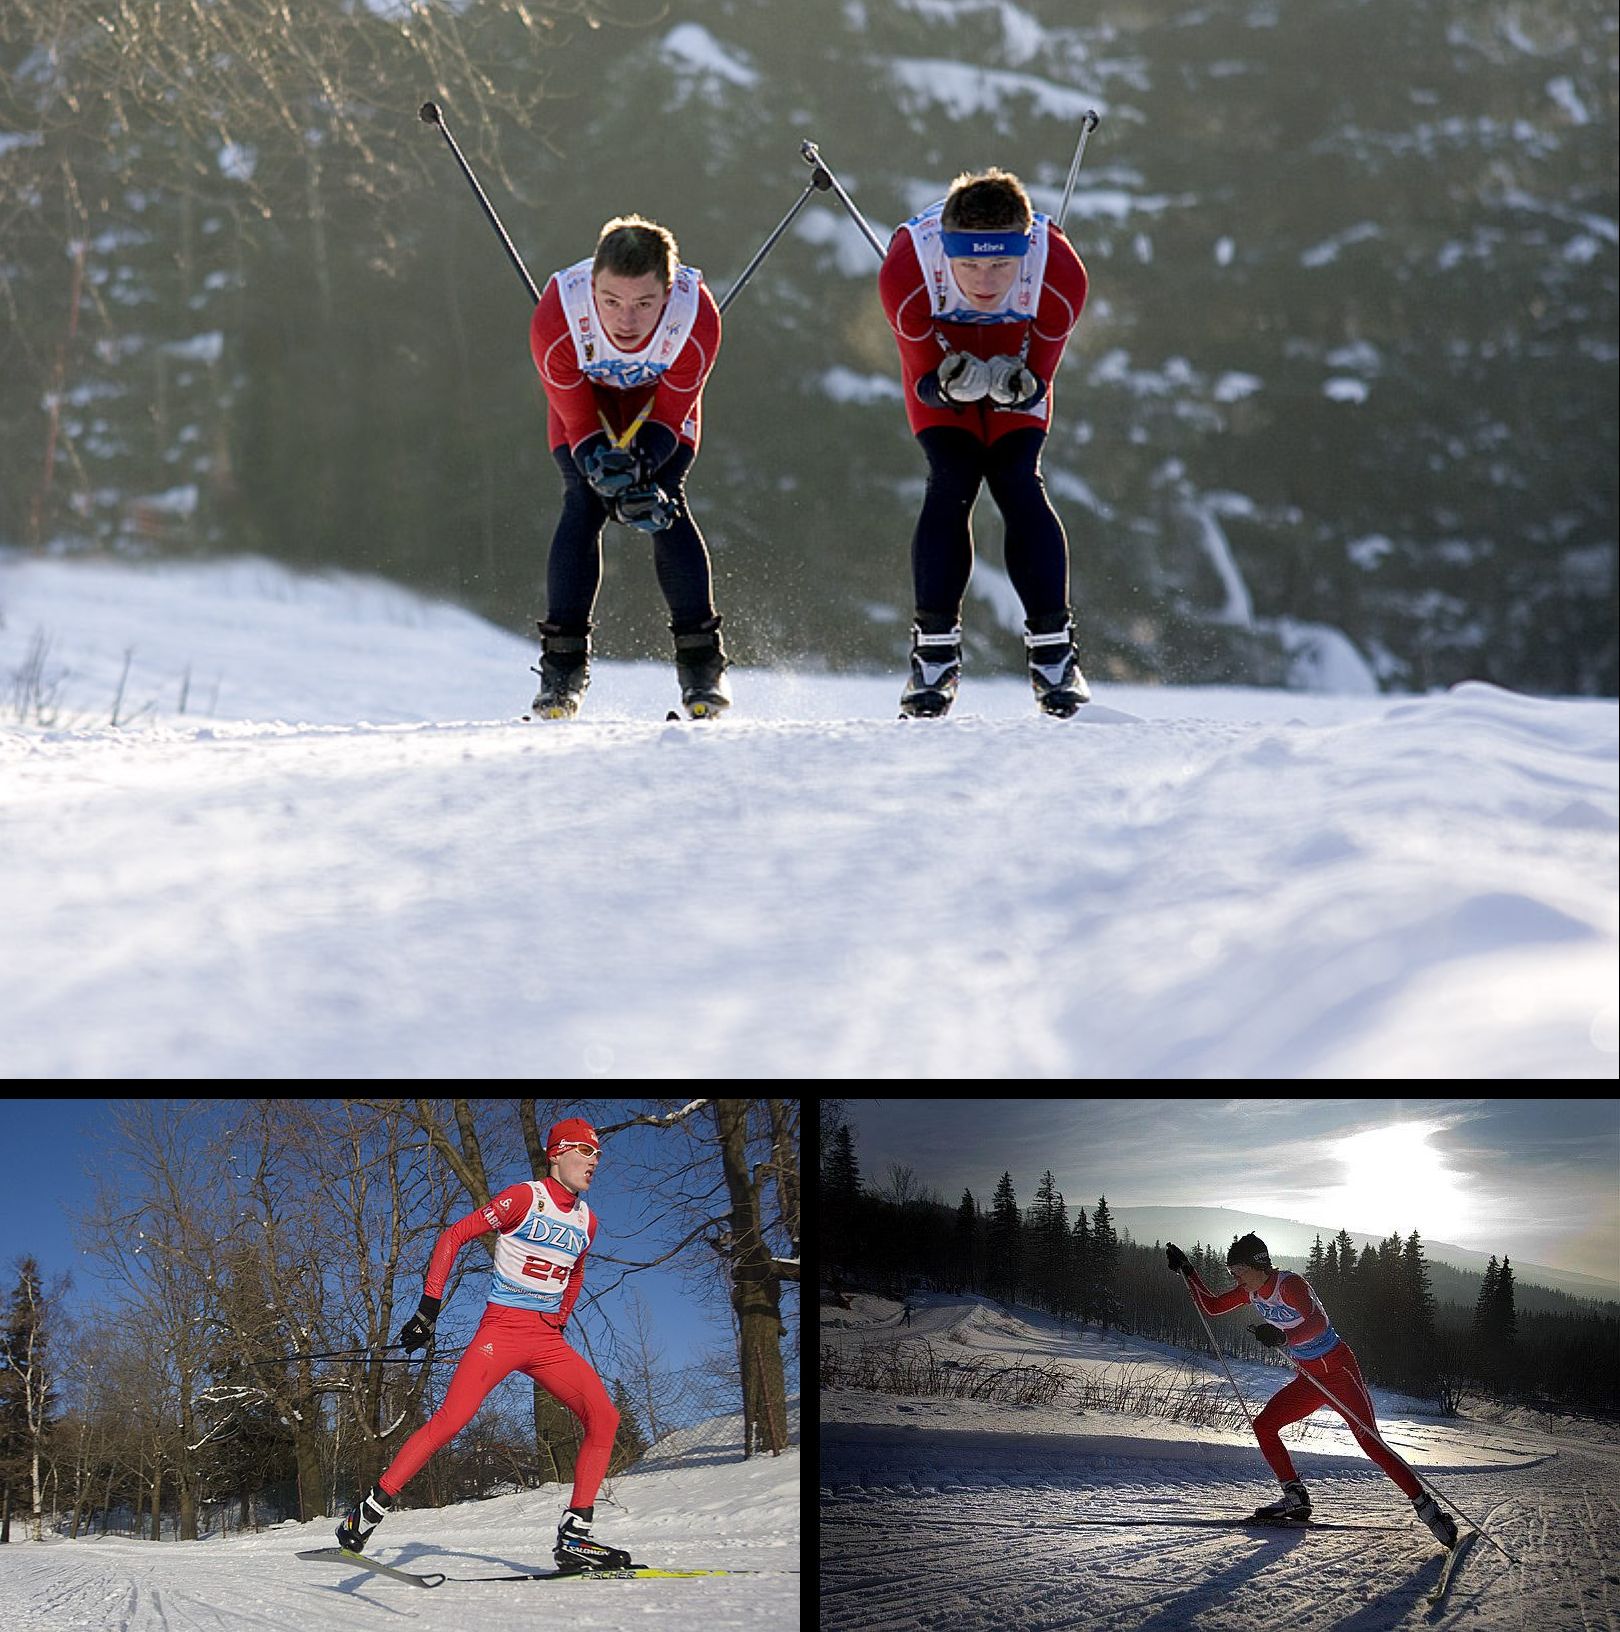 Biegacze narciarscy na zimowej trasie. W Szklarskiej Porębie-Jakuszycach zostaną rozegrane biegi narciarskie